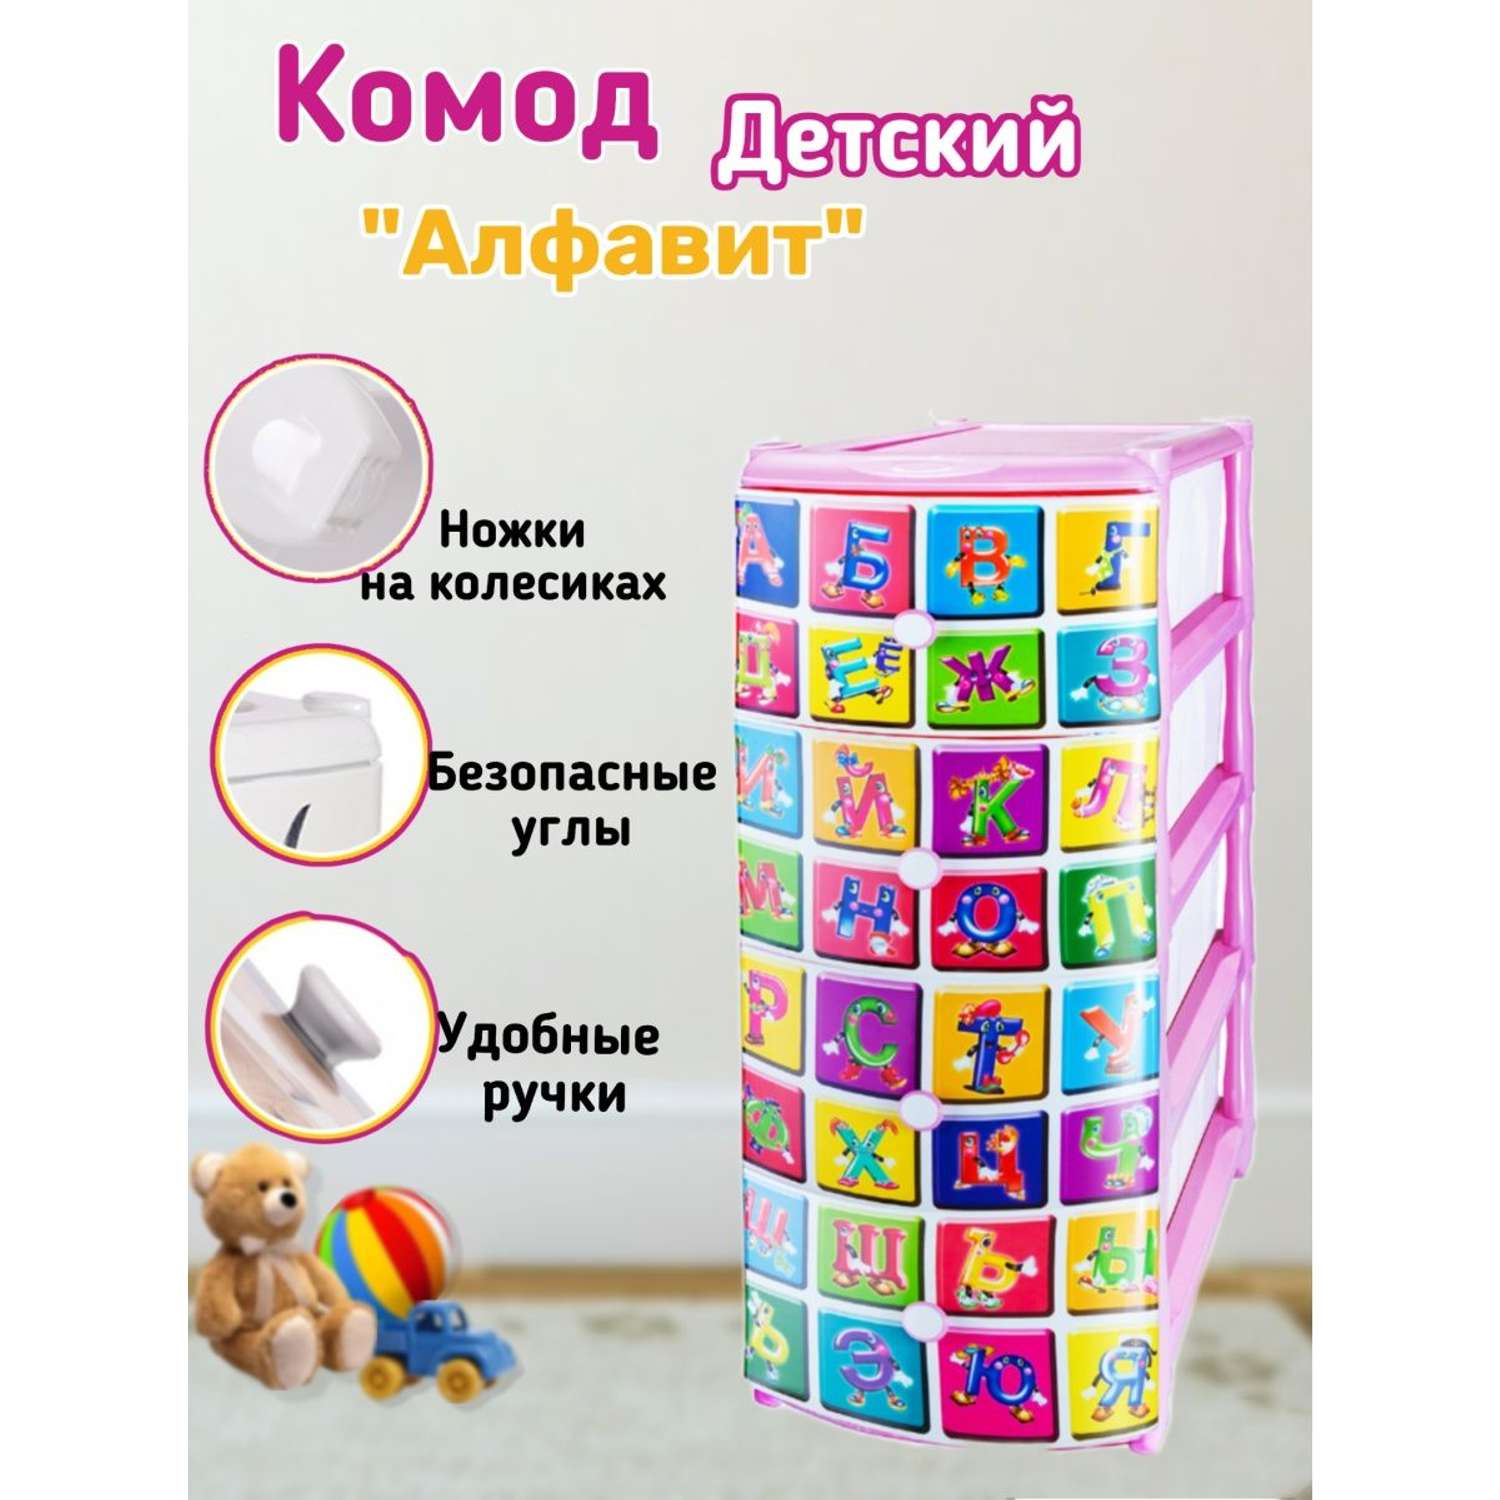 Комод детский пластиковый elfplast №3 Алфавит для игрушек и вещей цвет-малиново-розовый - фото 1